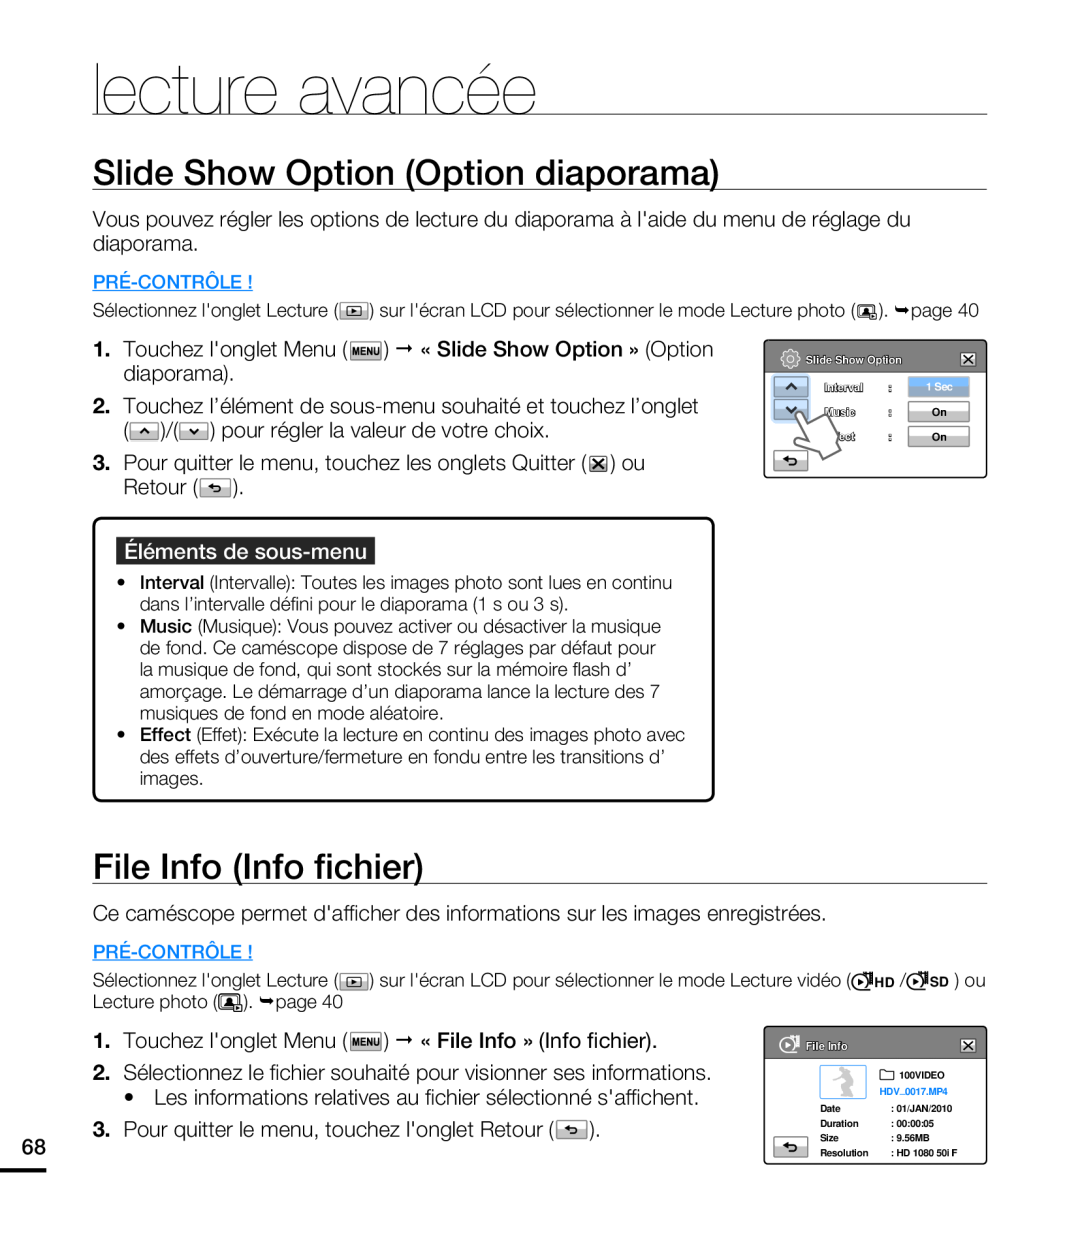 Samsung HMX-T10WP/XEU Slide Show Option Option diaporama, File Info Info fichier, Touchez longlet Menu, lecture avancée 